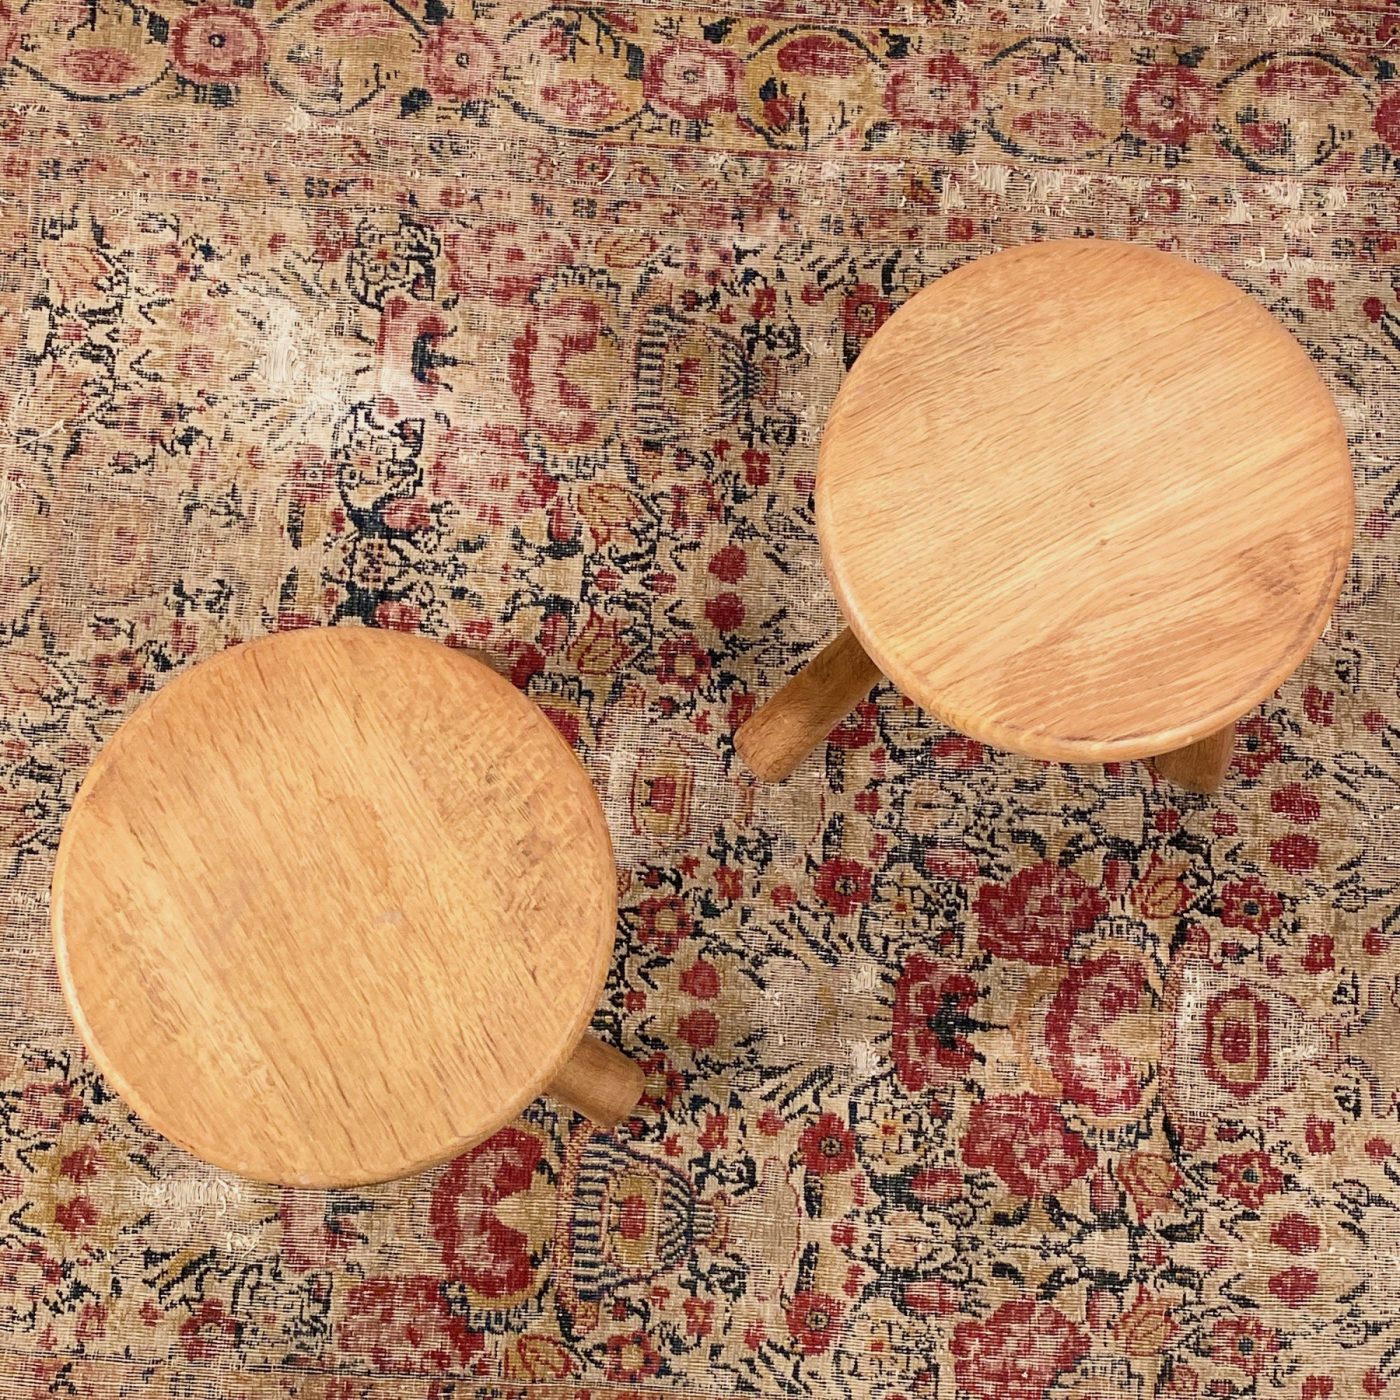 objet-vagabond-oak-stools0002